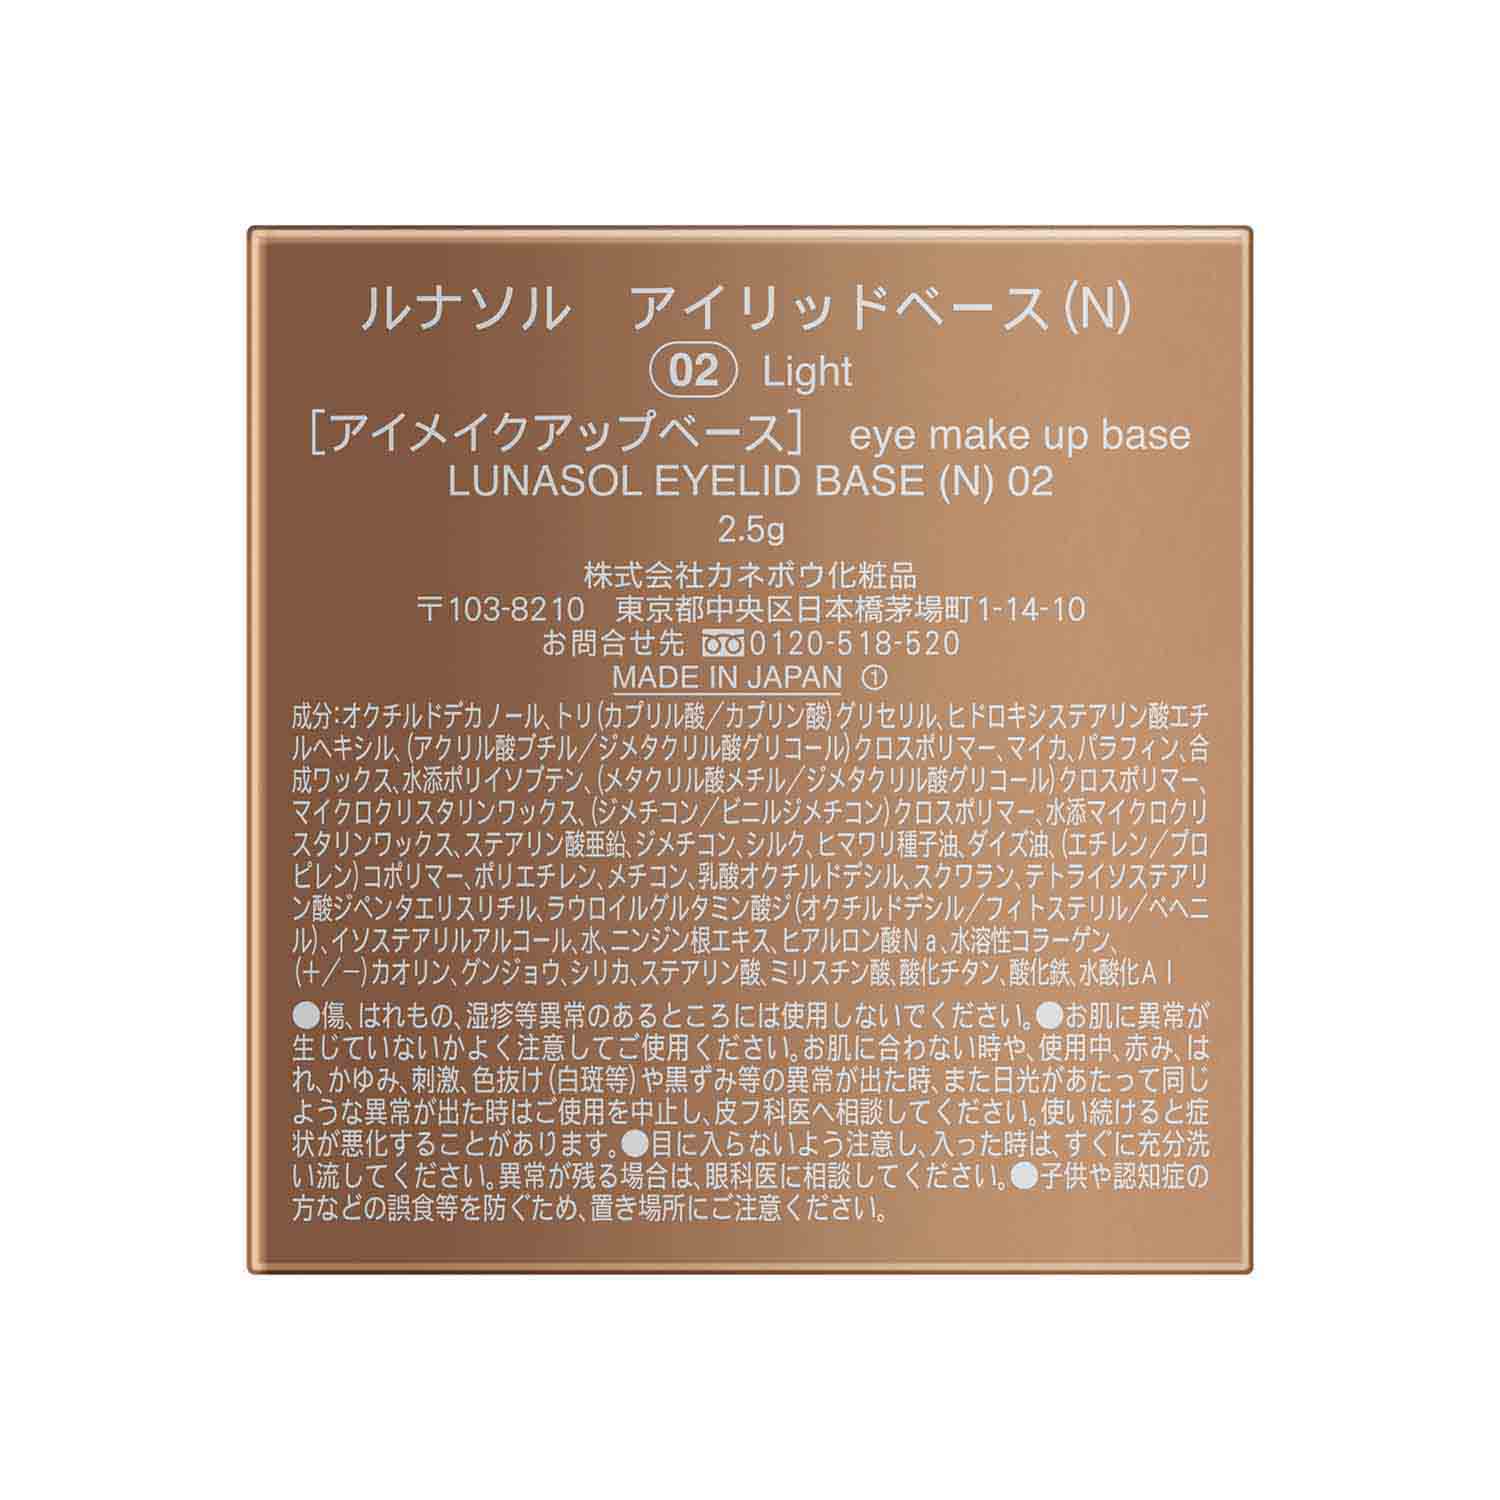 Lunasol Eye Lid Base (N) - Ichiban Mart